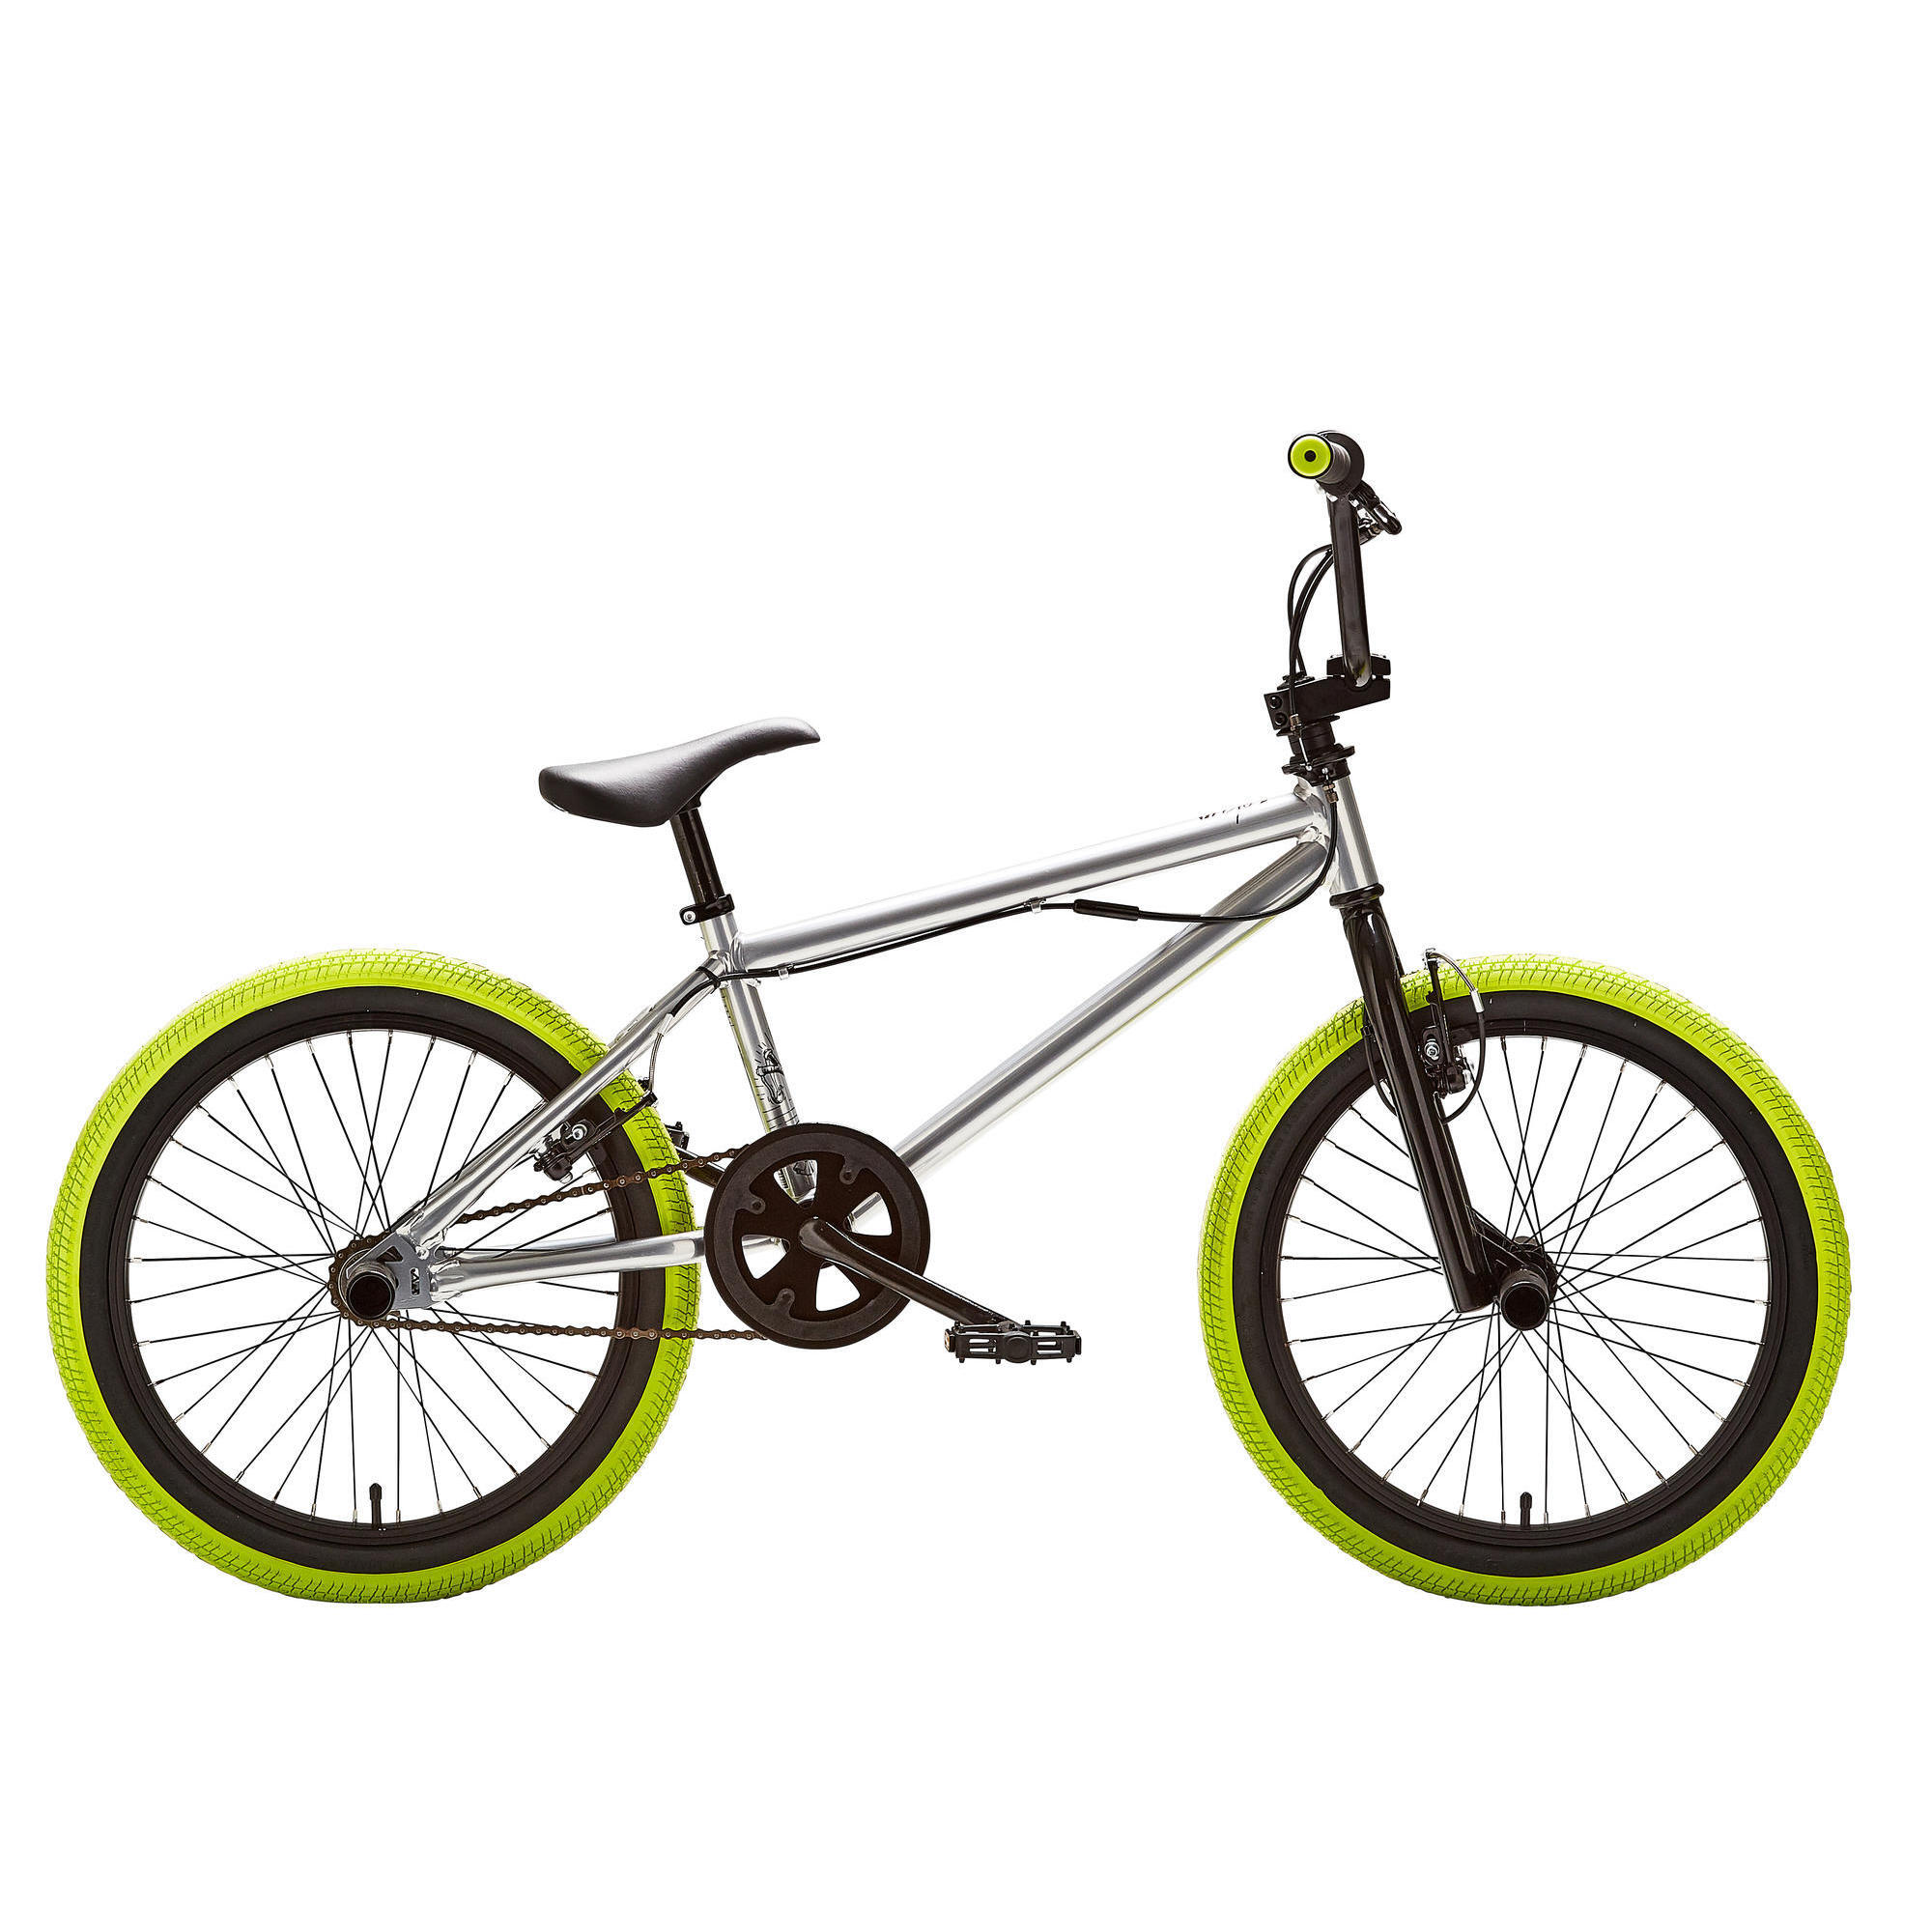 Bicicletă BMX Wipe 520